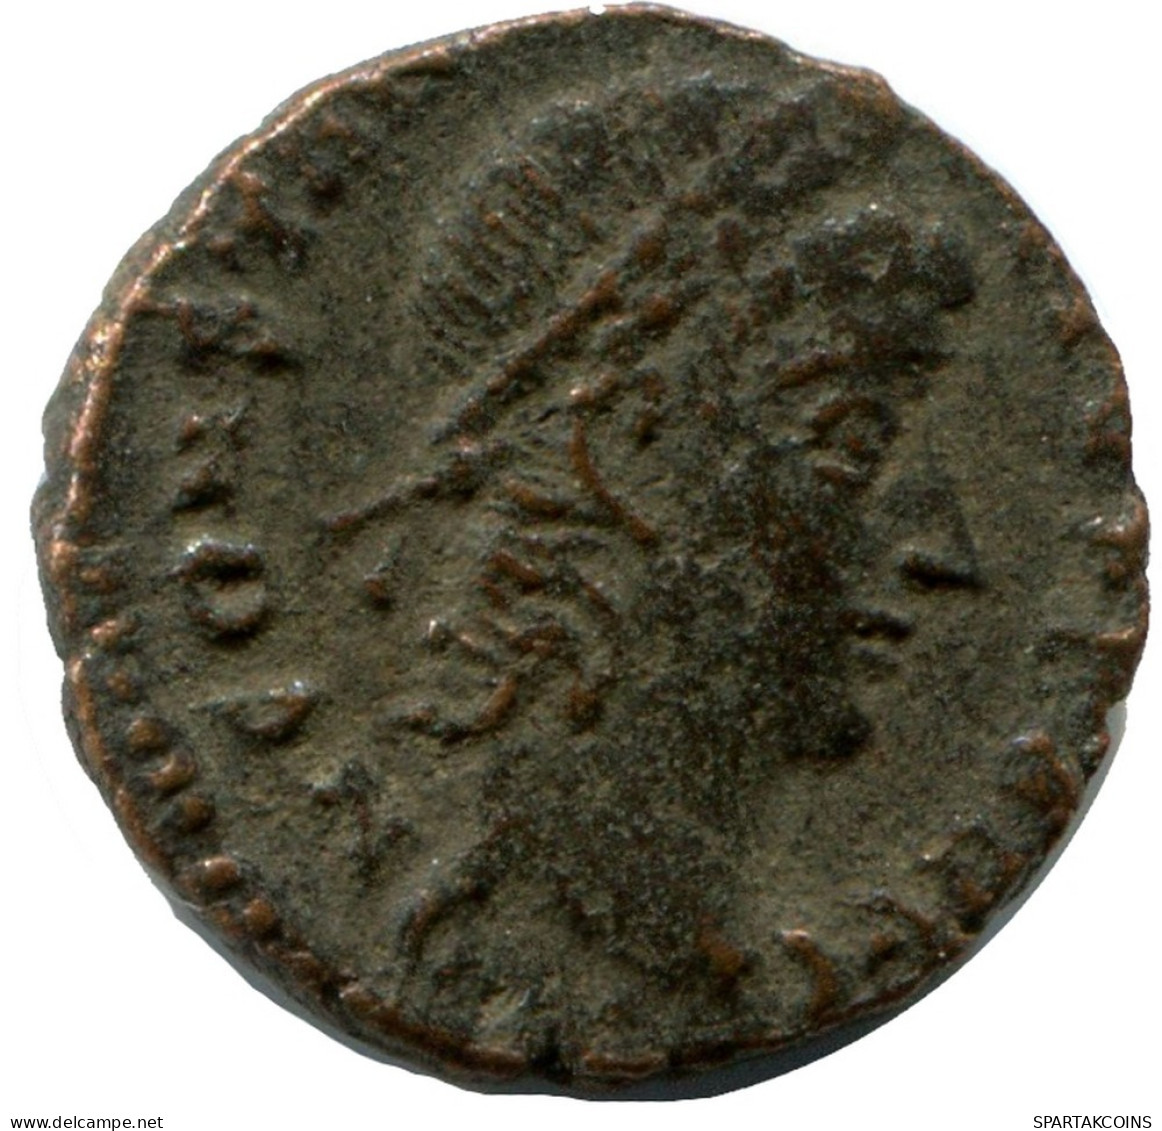 CONSTANTIUS II ALEKSANDRIA FROM THE ROYAL ONTARIO MUSEUM #ANC10497.14.U.A - L'Empire Chrétien (307 à 363)